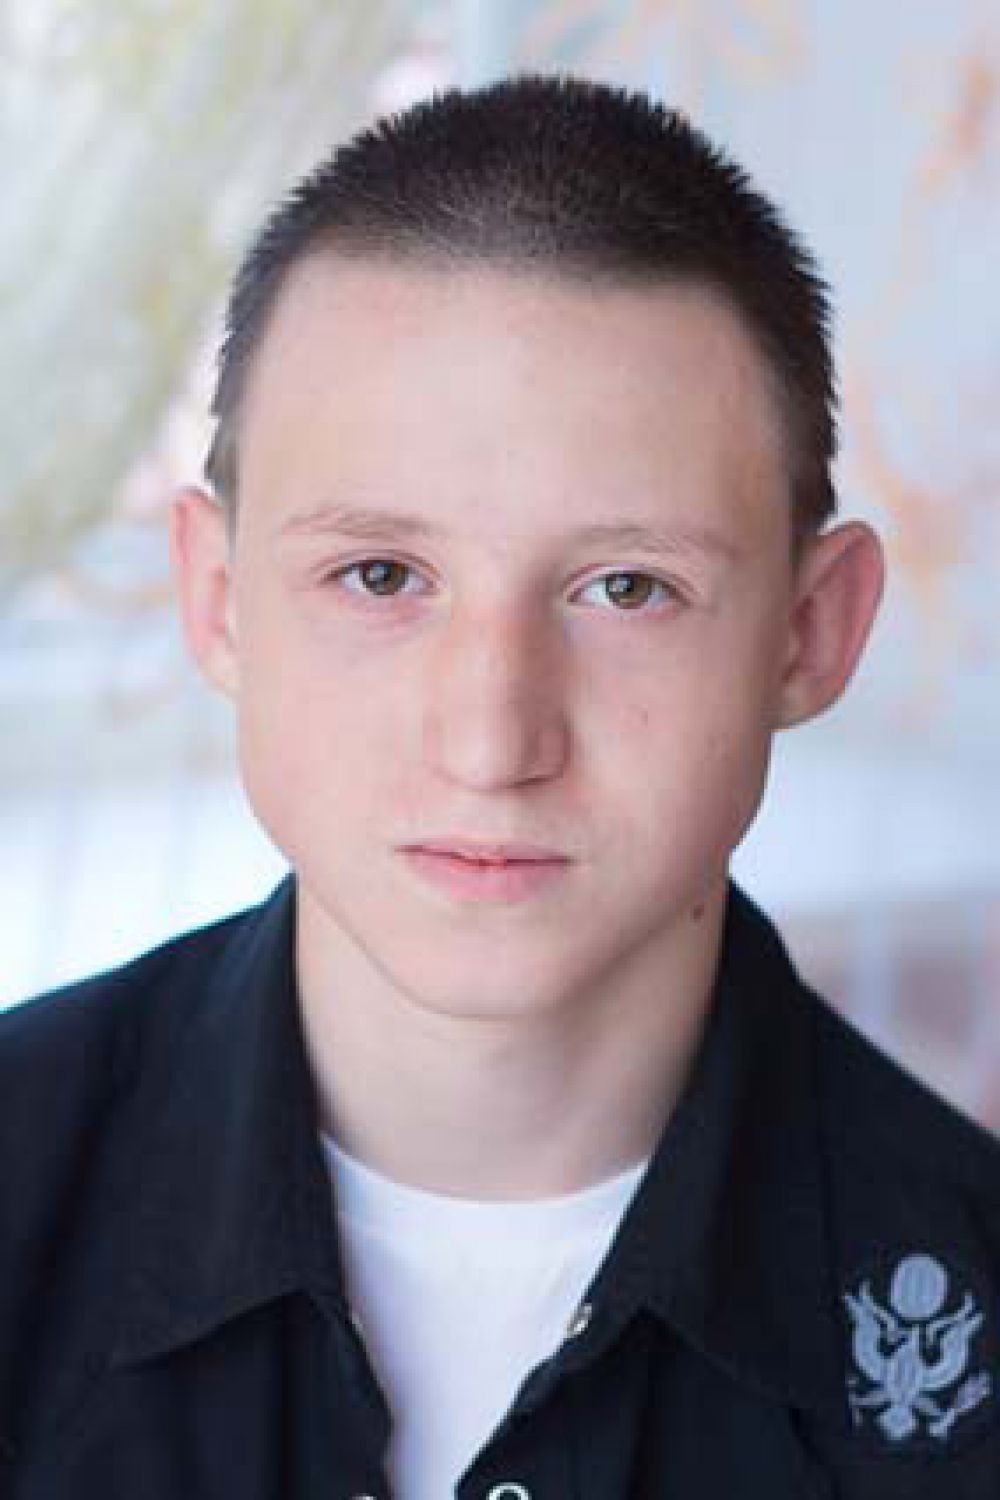 Владислав,15 лет. Уравновешенный, спокойный, общительный, добрый, исполнительный, трудолюбивый, увлекается прикладным искусством, танцами, интеллектуально развит.